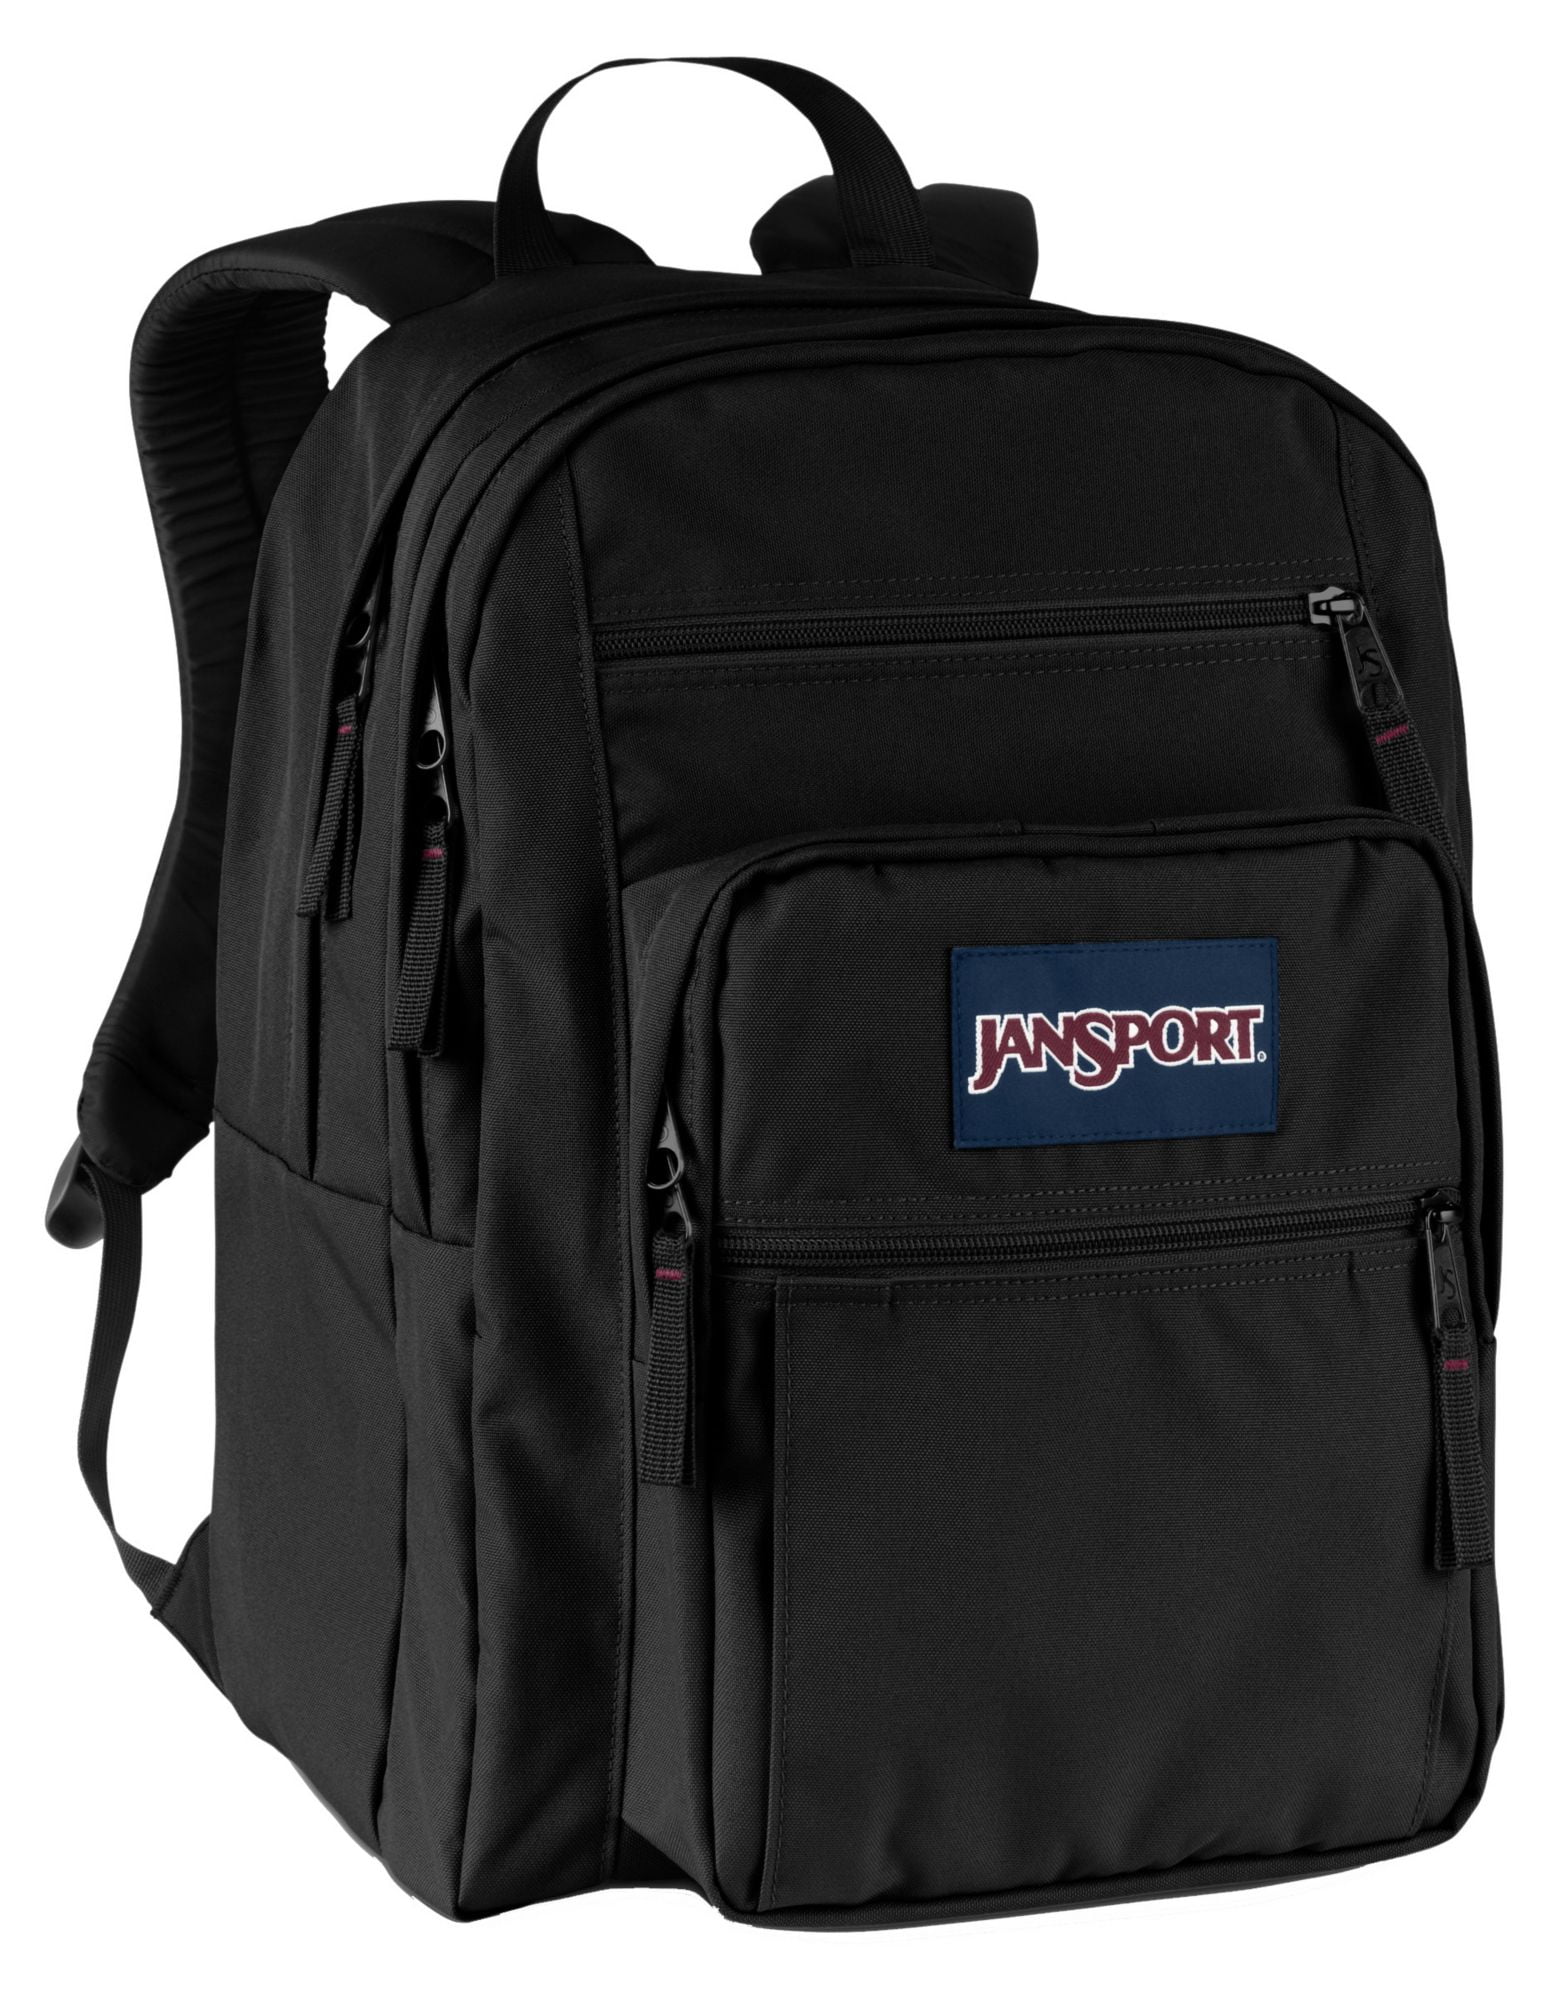 jansport backpack walmart